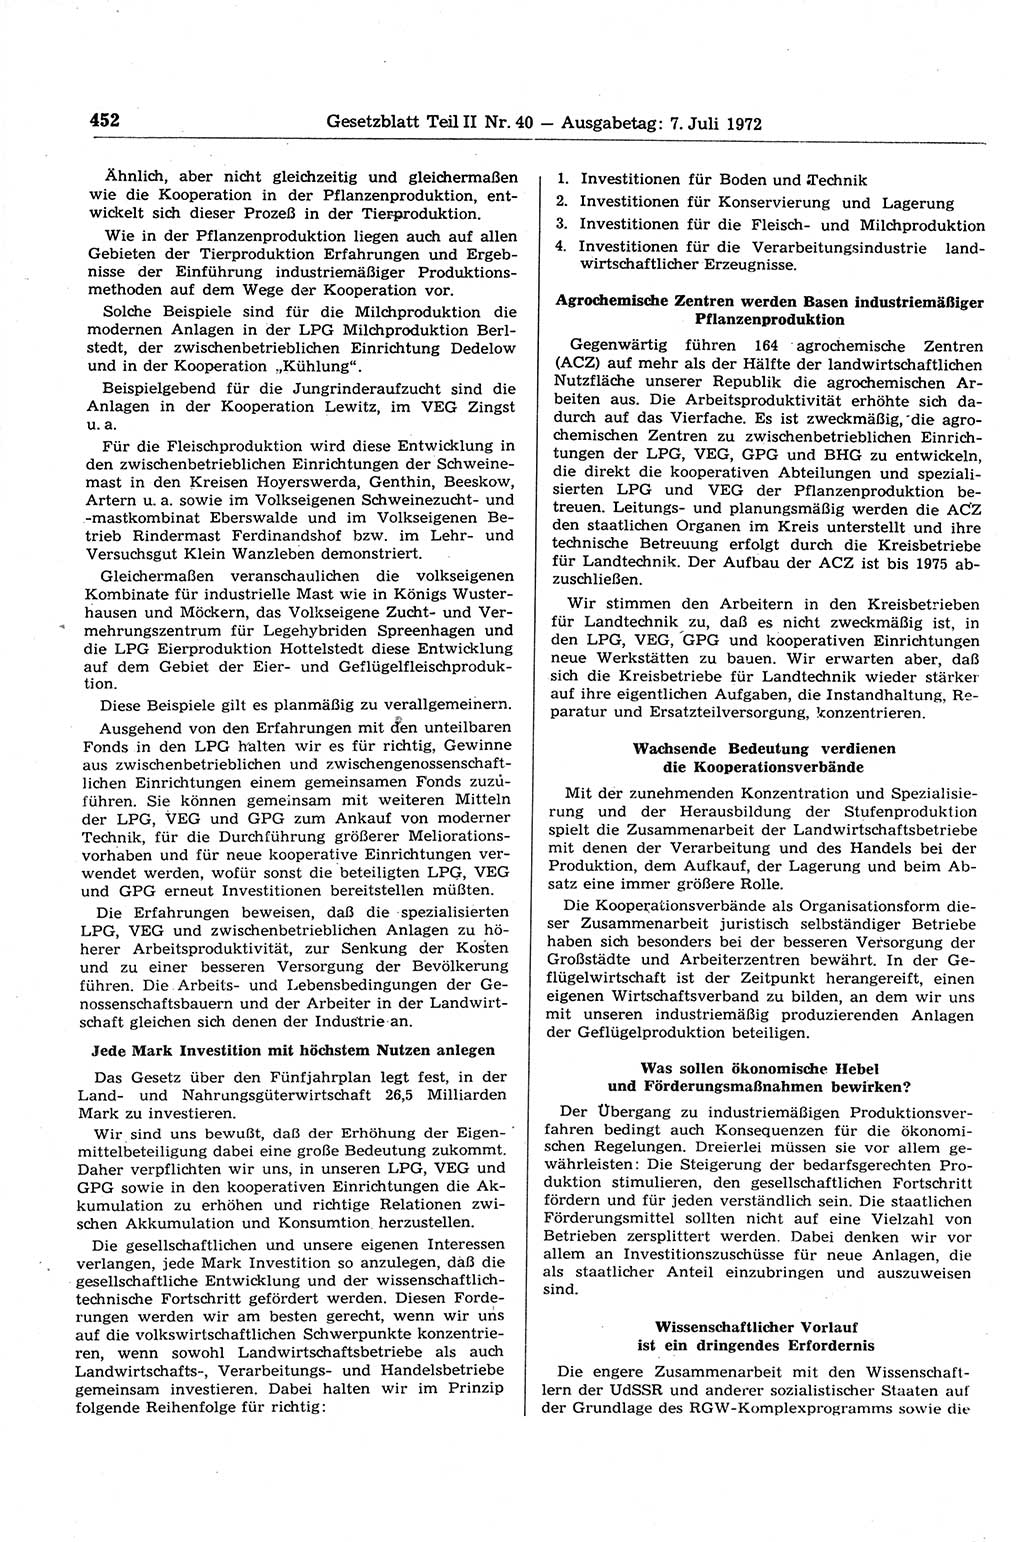 Gesetzblatt (GBl.) der Deutschen Demokratischen Republik (DDR) Teil ⅠⅠ 1972, Seite 452 (GBl. DDR ⅠⅠ 1972, S. 452)